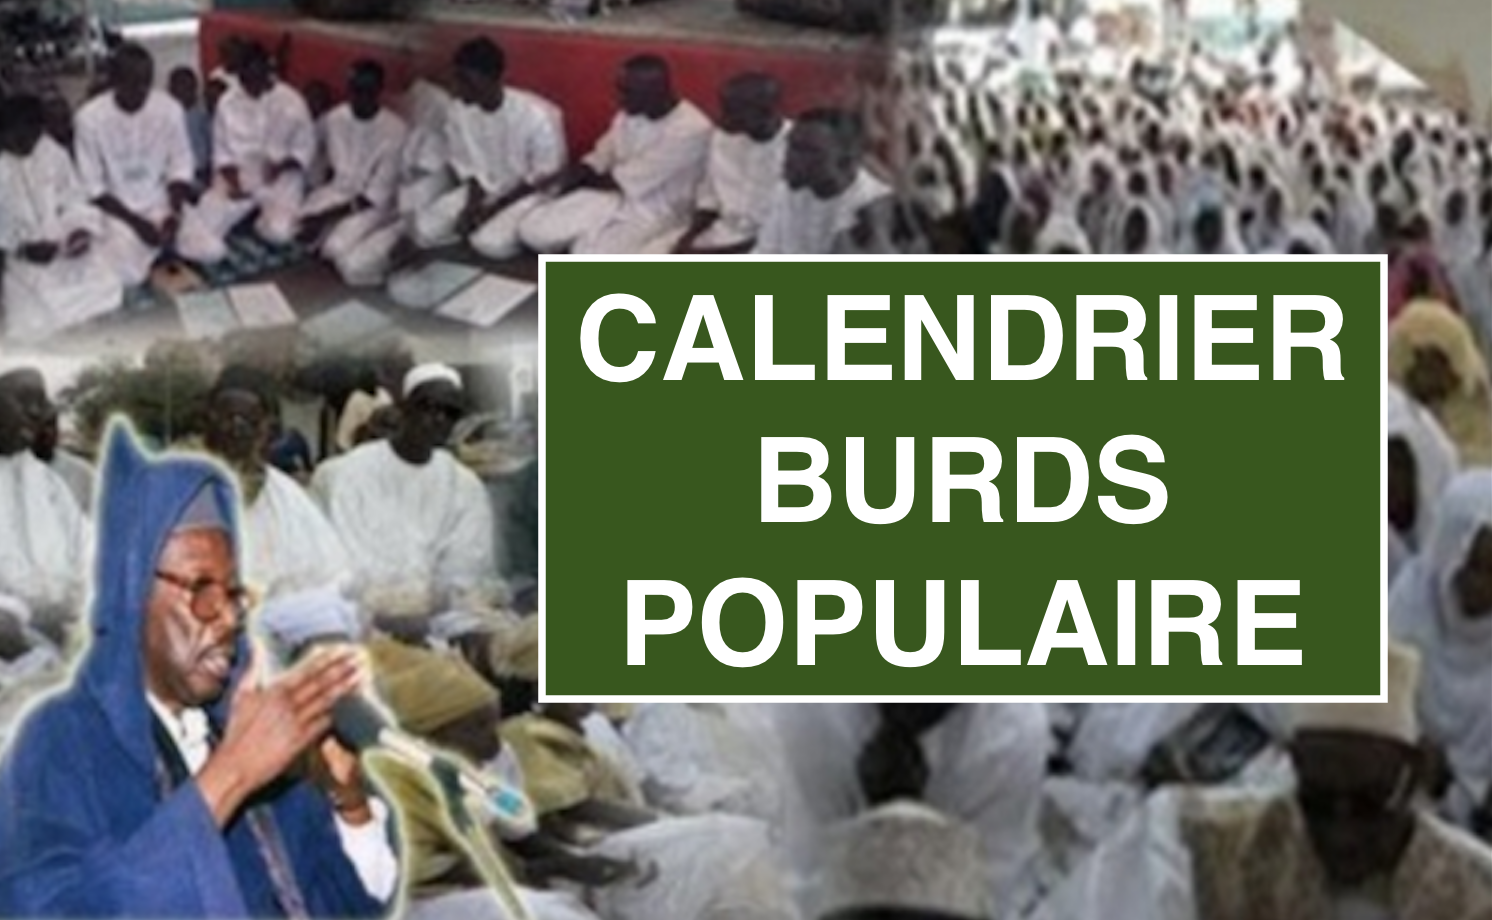 Voici le Calendrier des Burds Populaires du COSKAS, Mawlid 2015/2, AU Senegal et dans la Diaspora 